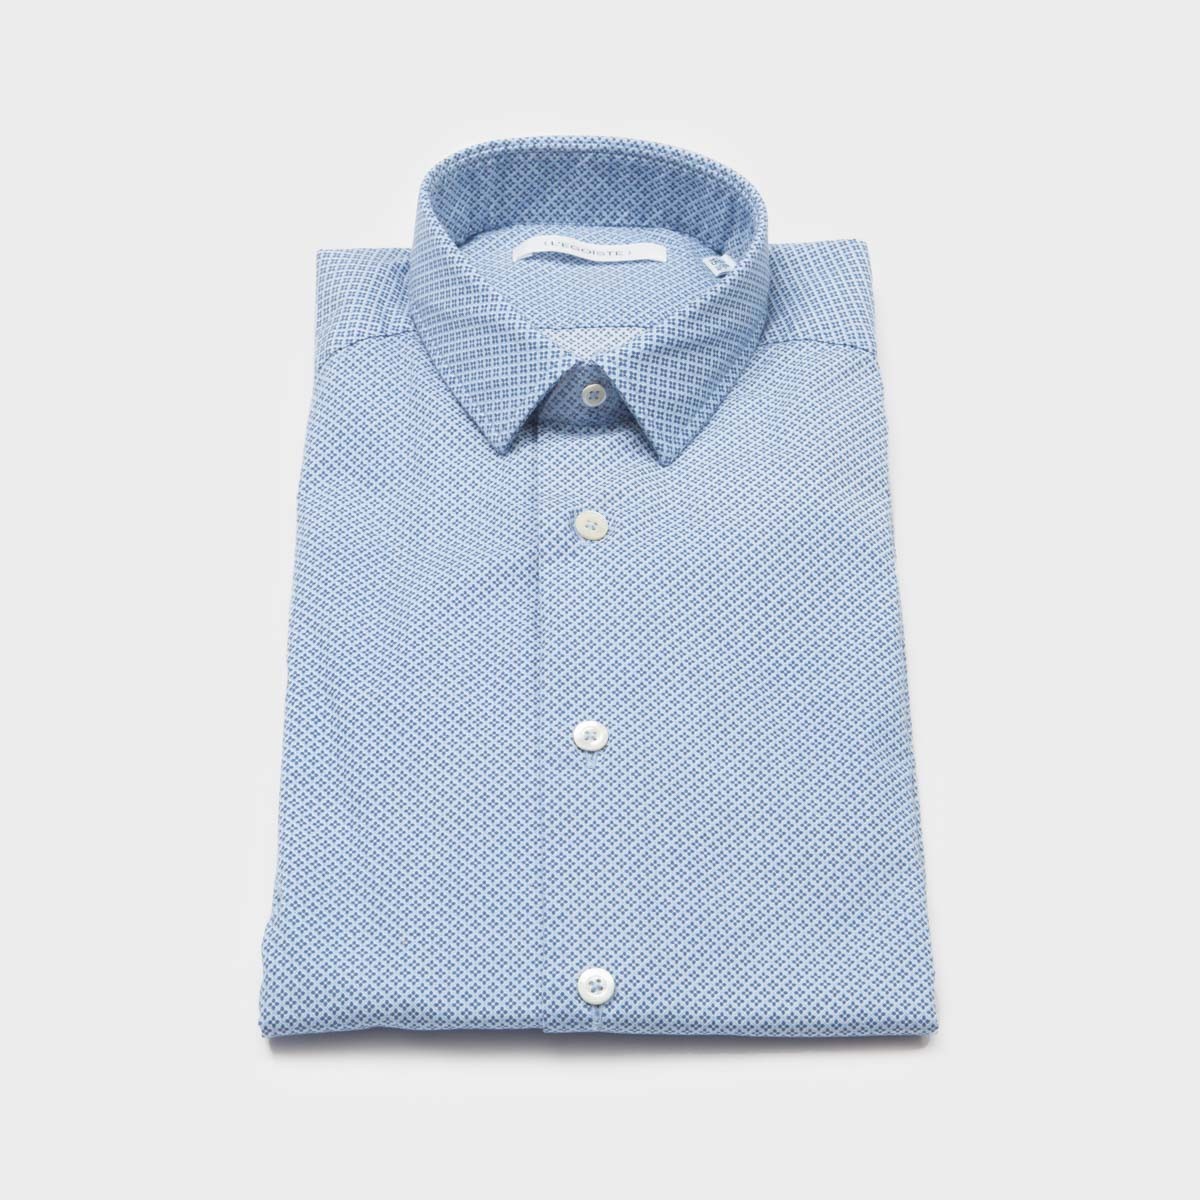 chemise-bleue-en-coton-a-motifs-manches-longues